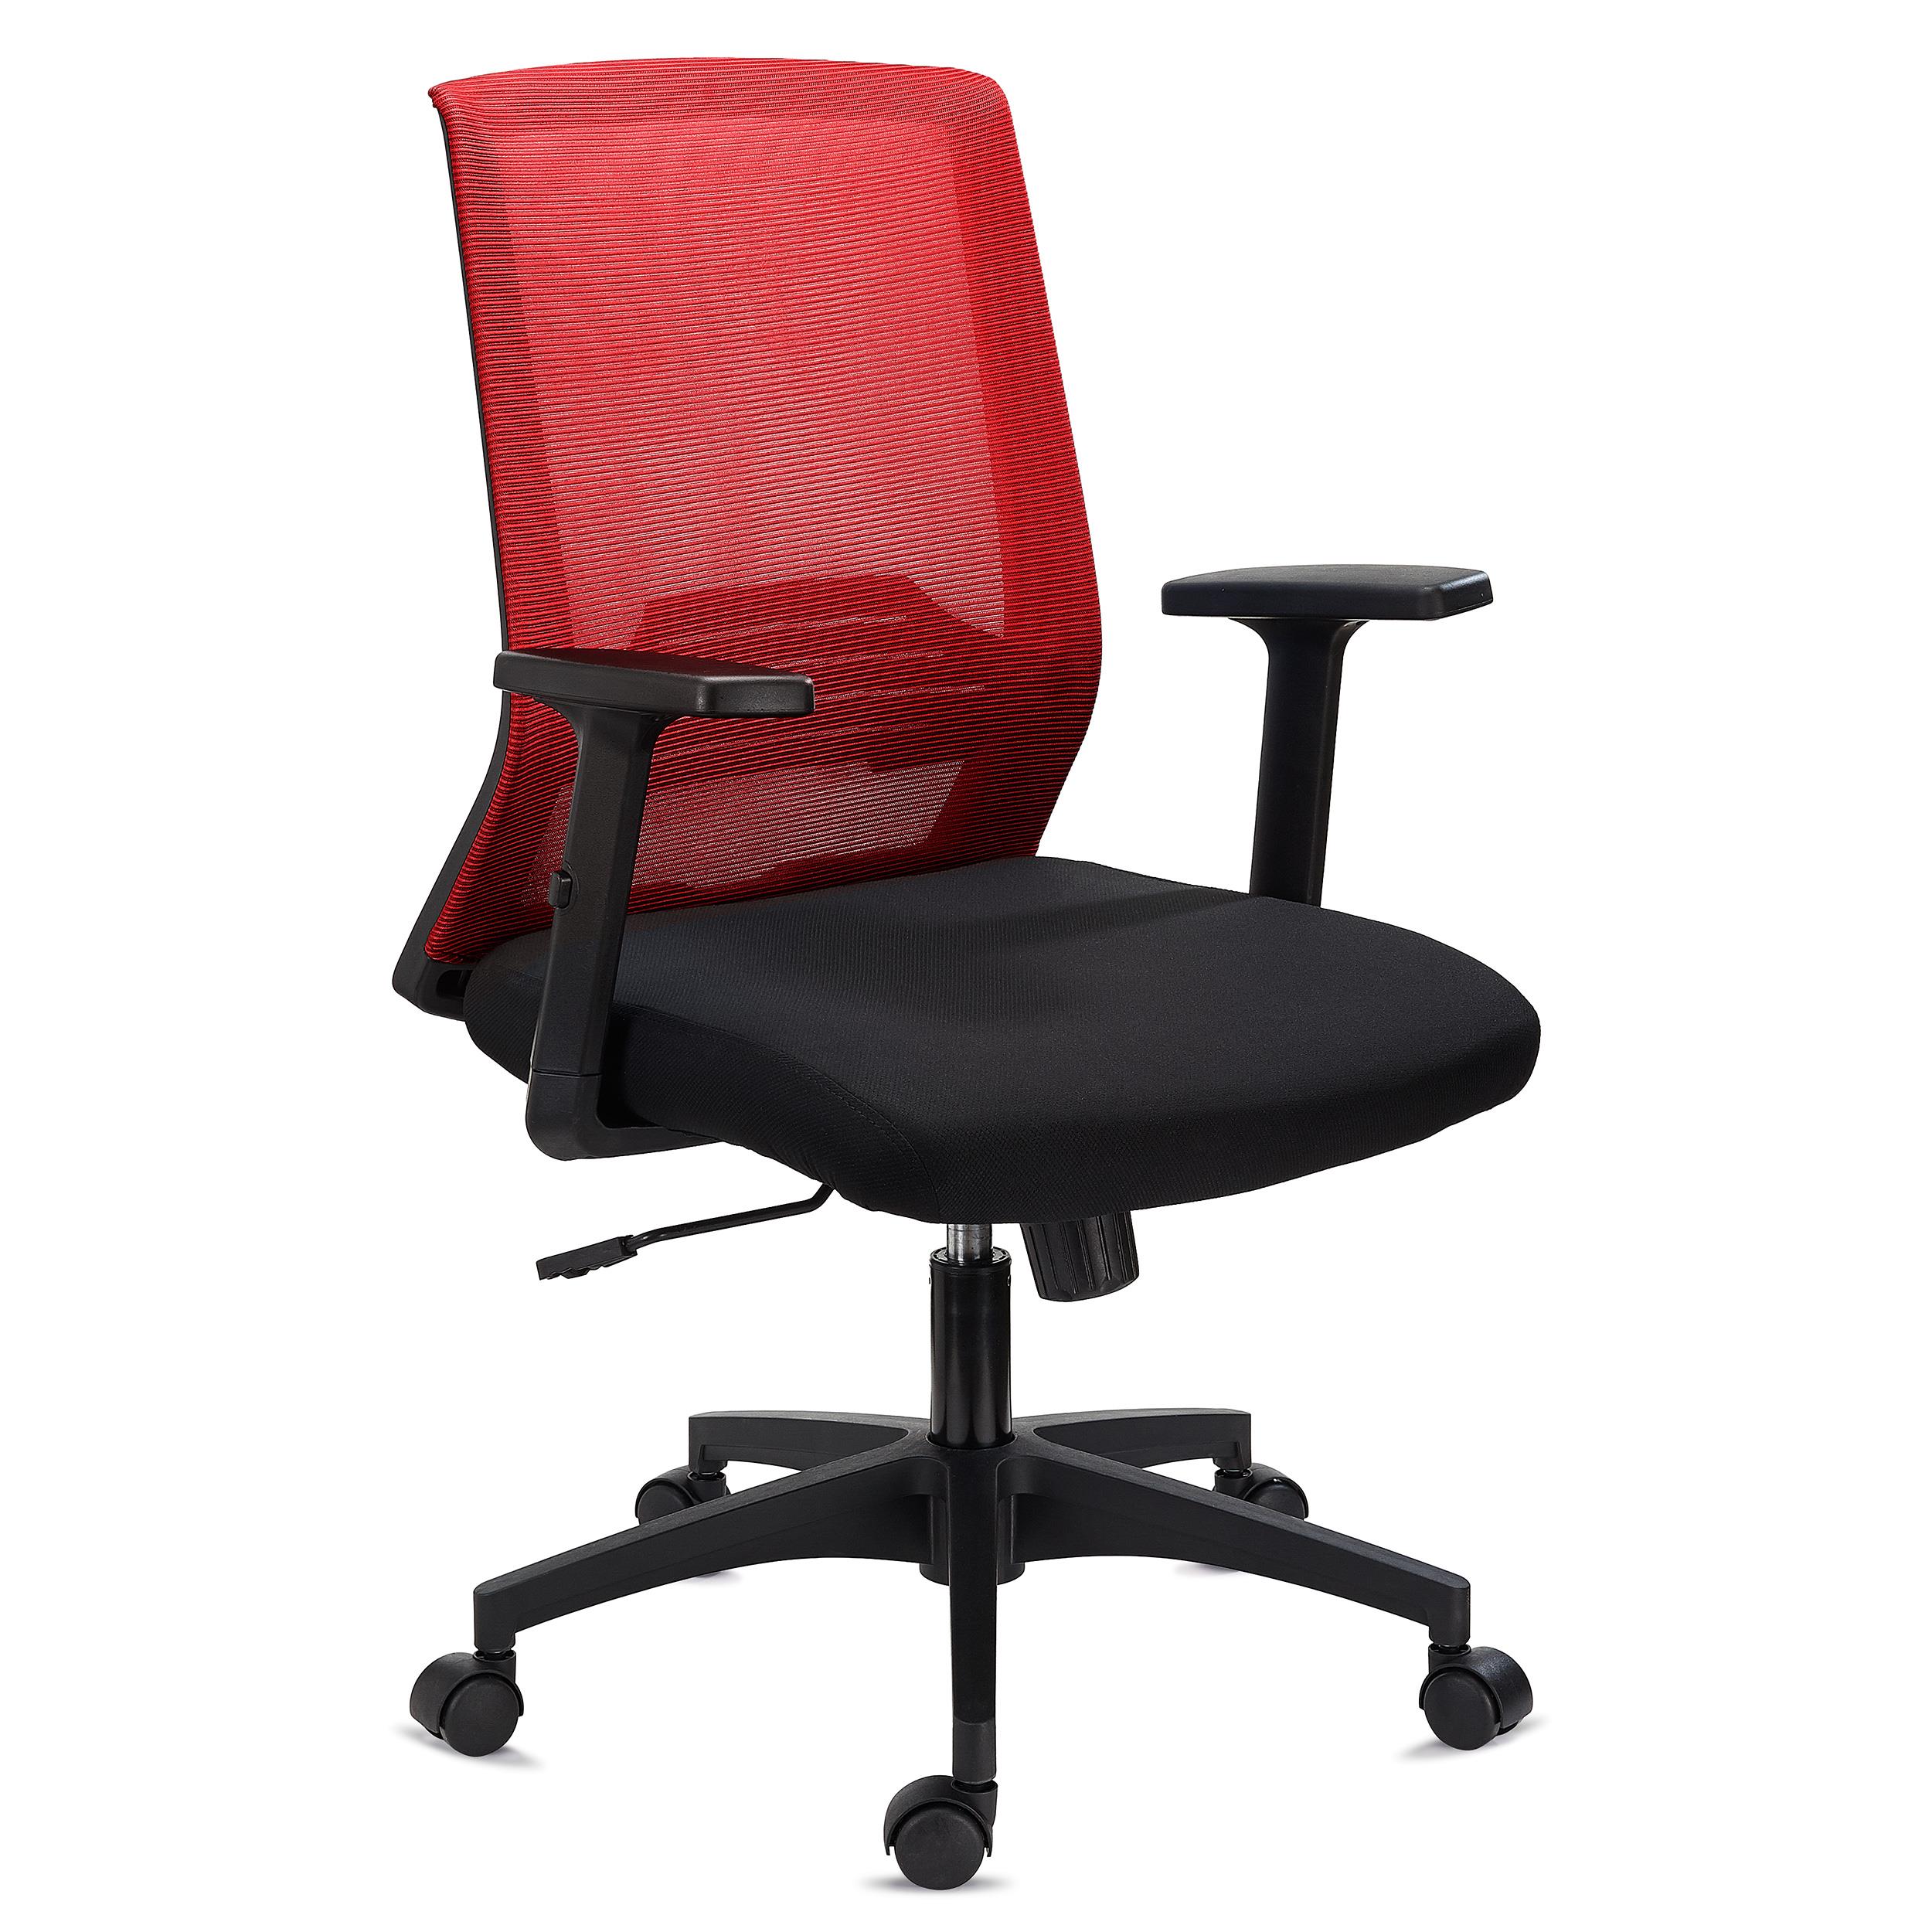 Chaise de Bureau MIAMI, Support Lombaire, Accoudoirs Ajustables, Confortable et Robuste, Rouge